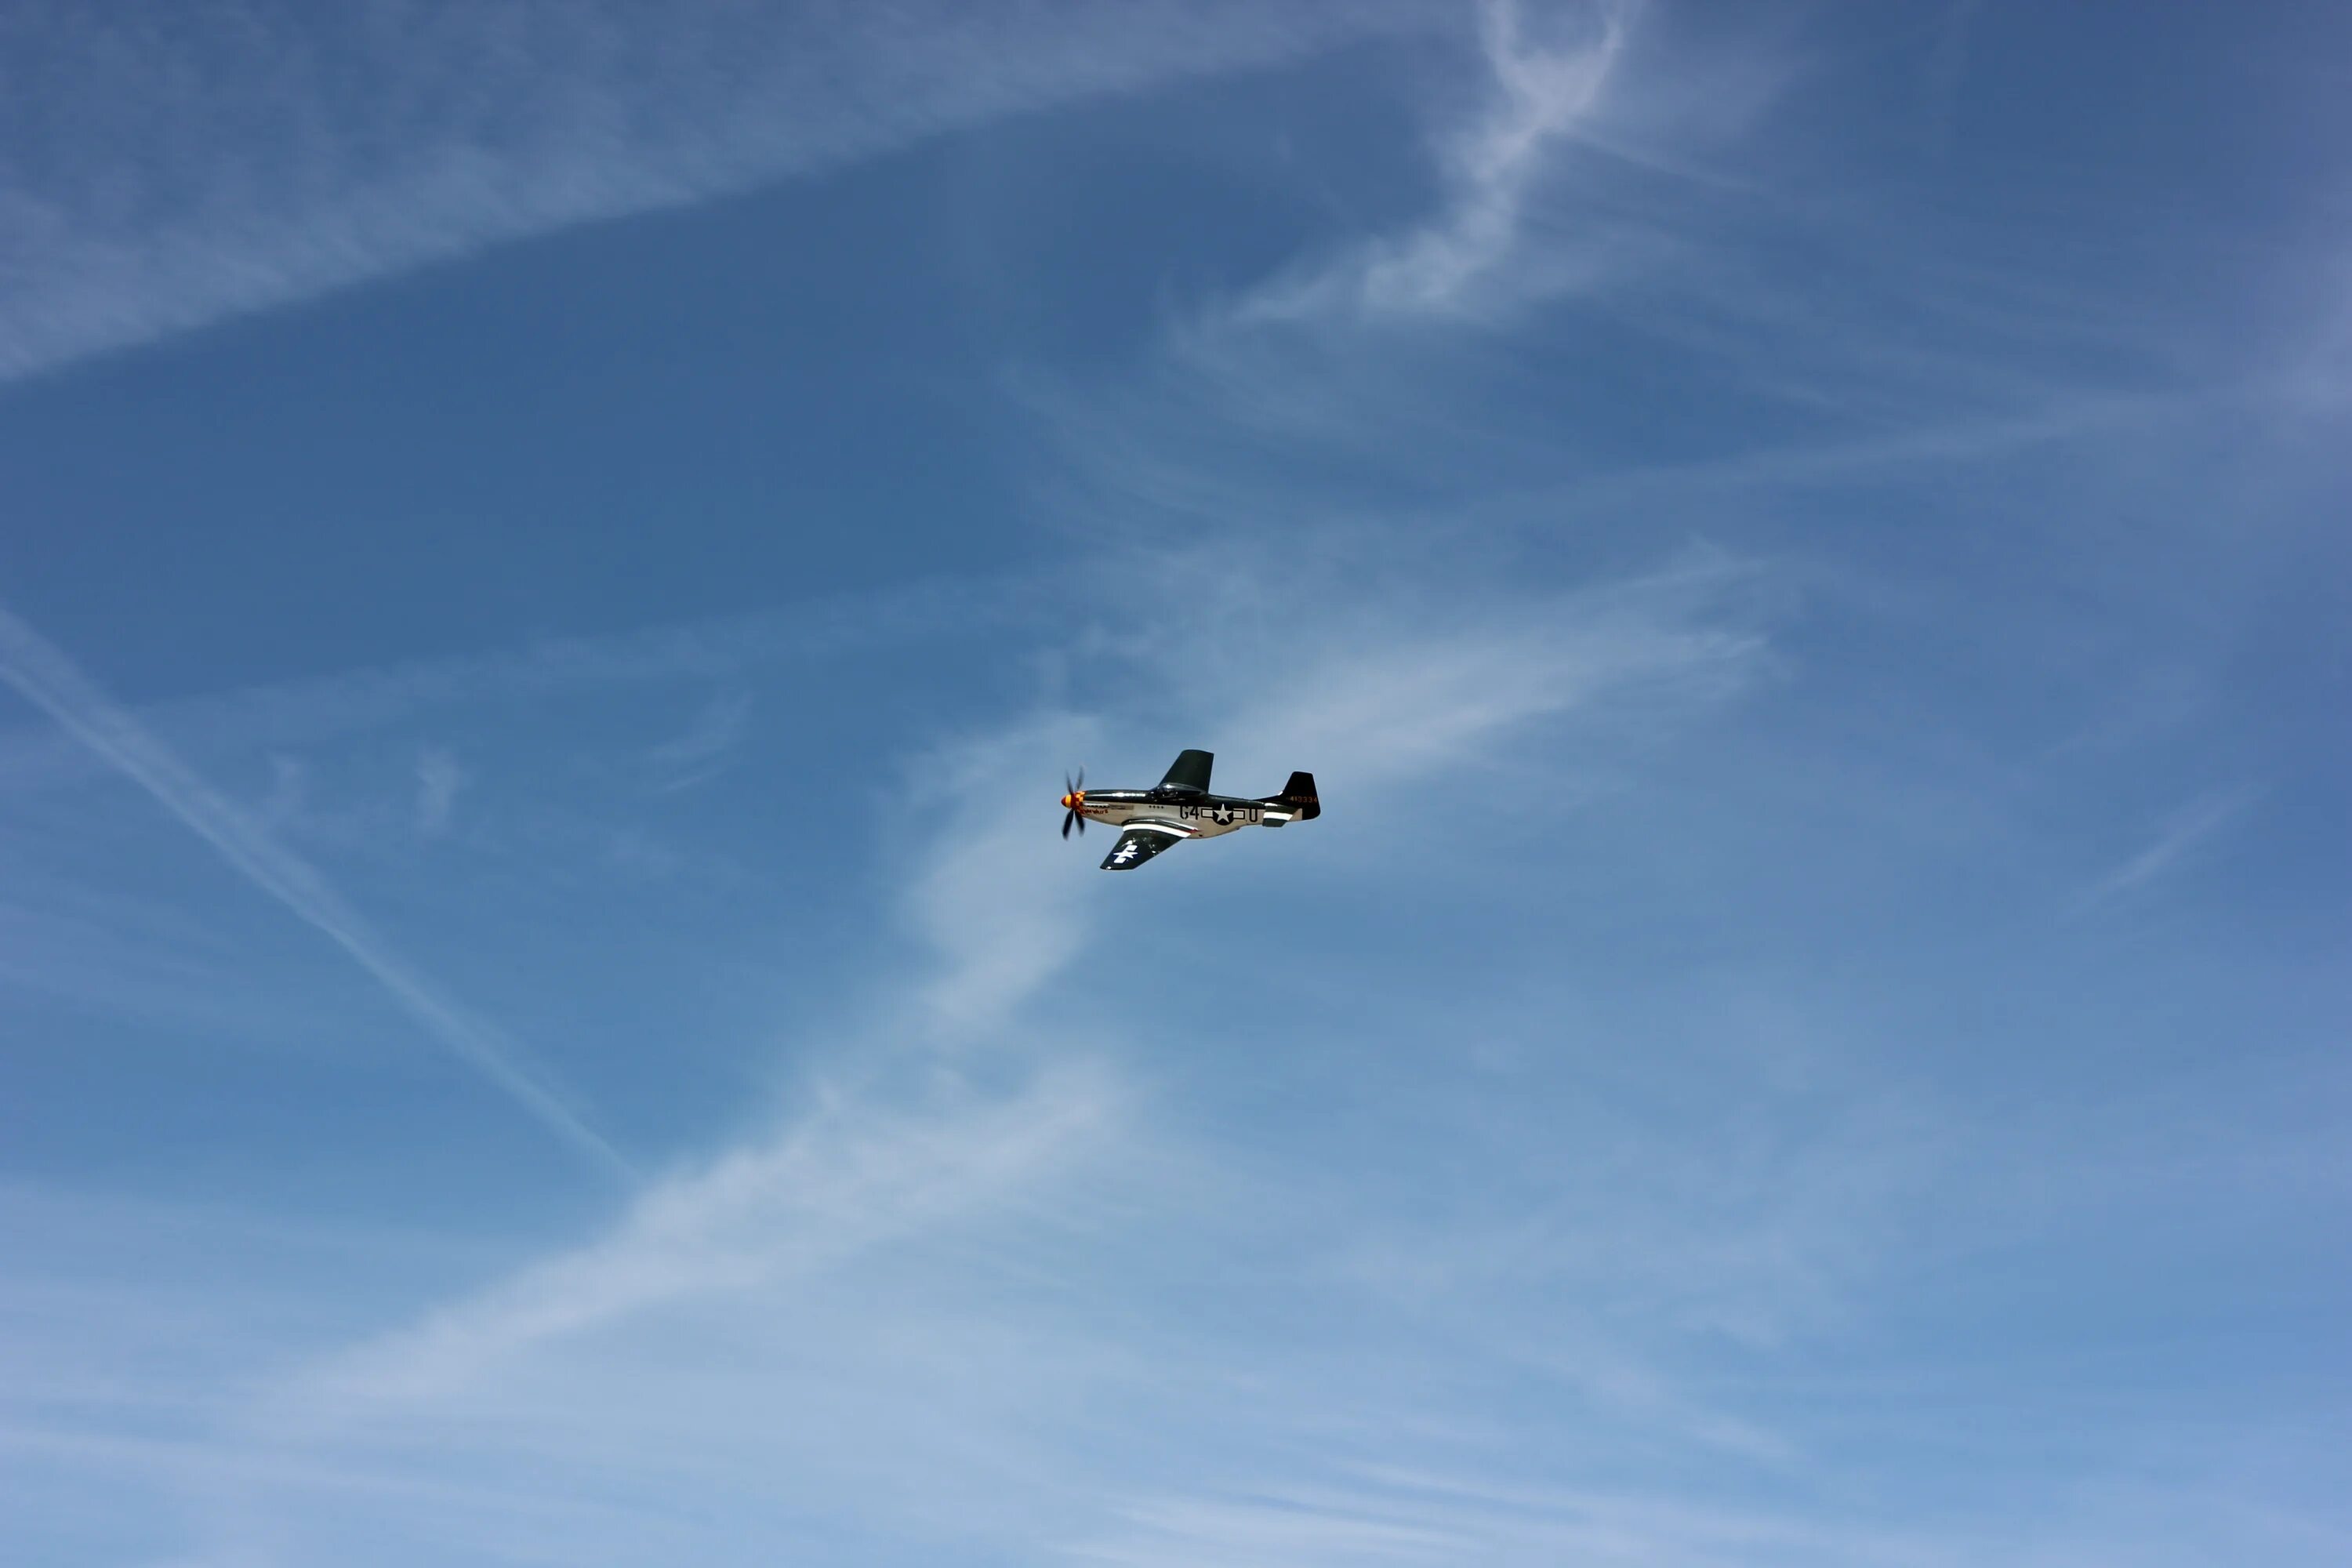 Пилотаж на самолете. Легкомоторный самолет в небе. Самолет в воздухе. Легкомоторный самолет высоко в небе. Воздушный пилотаж.